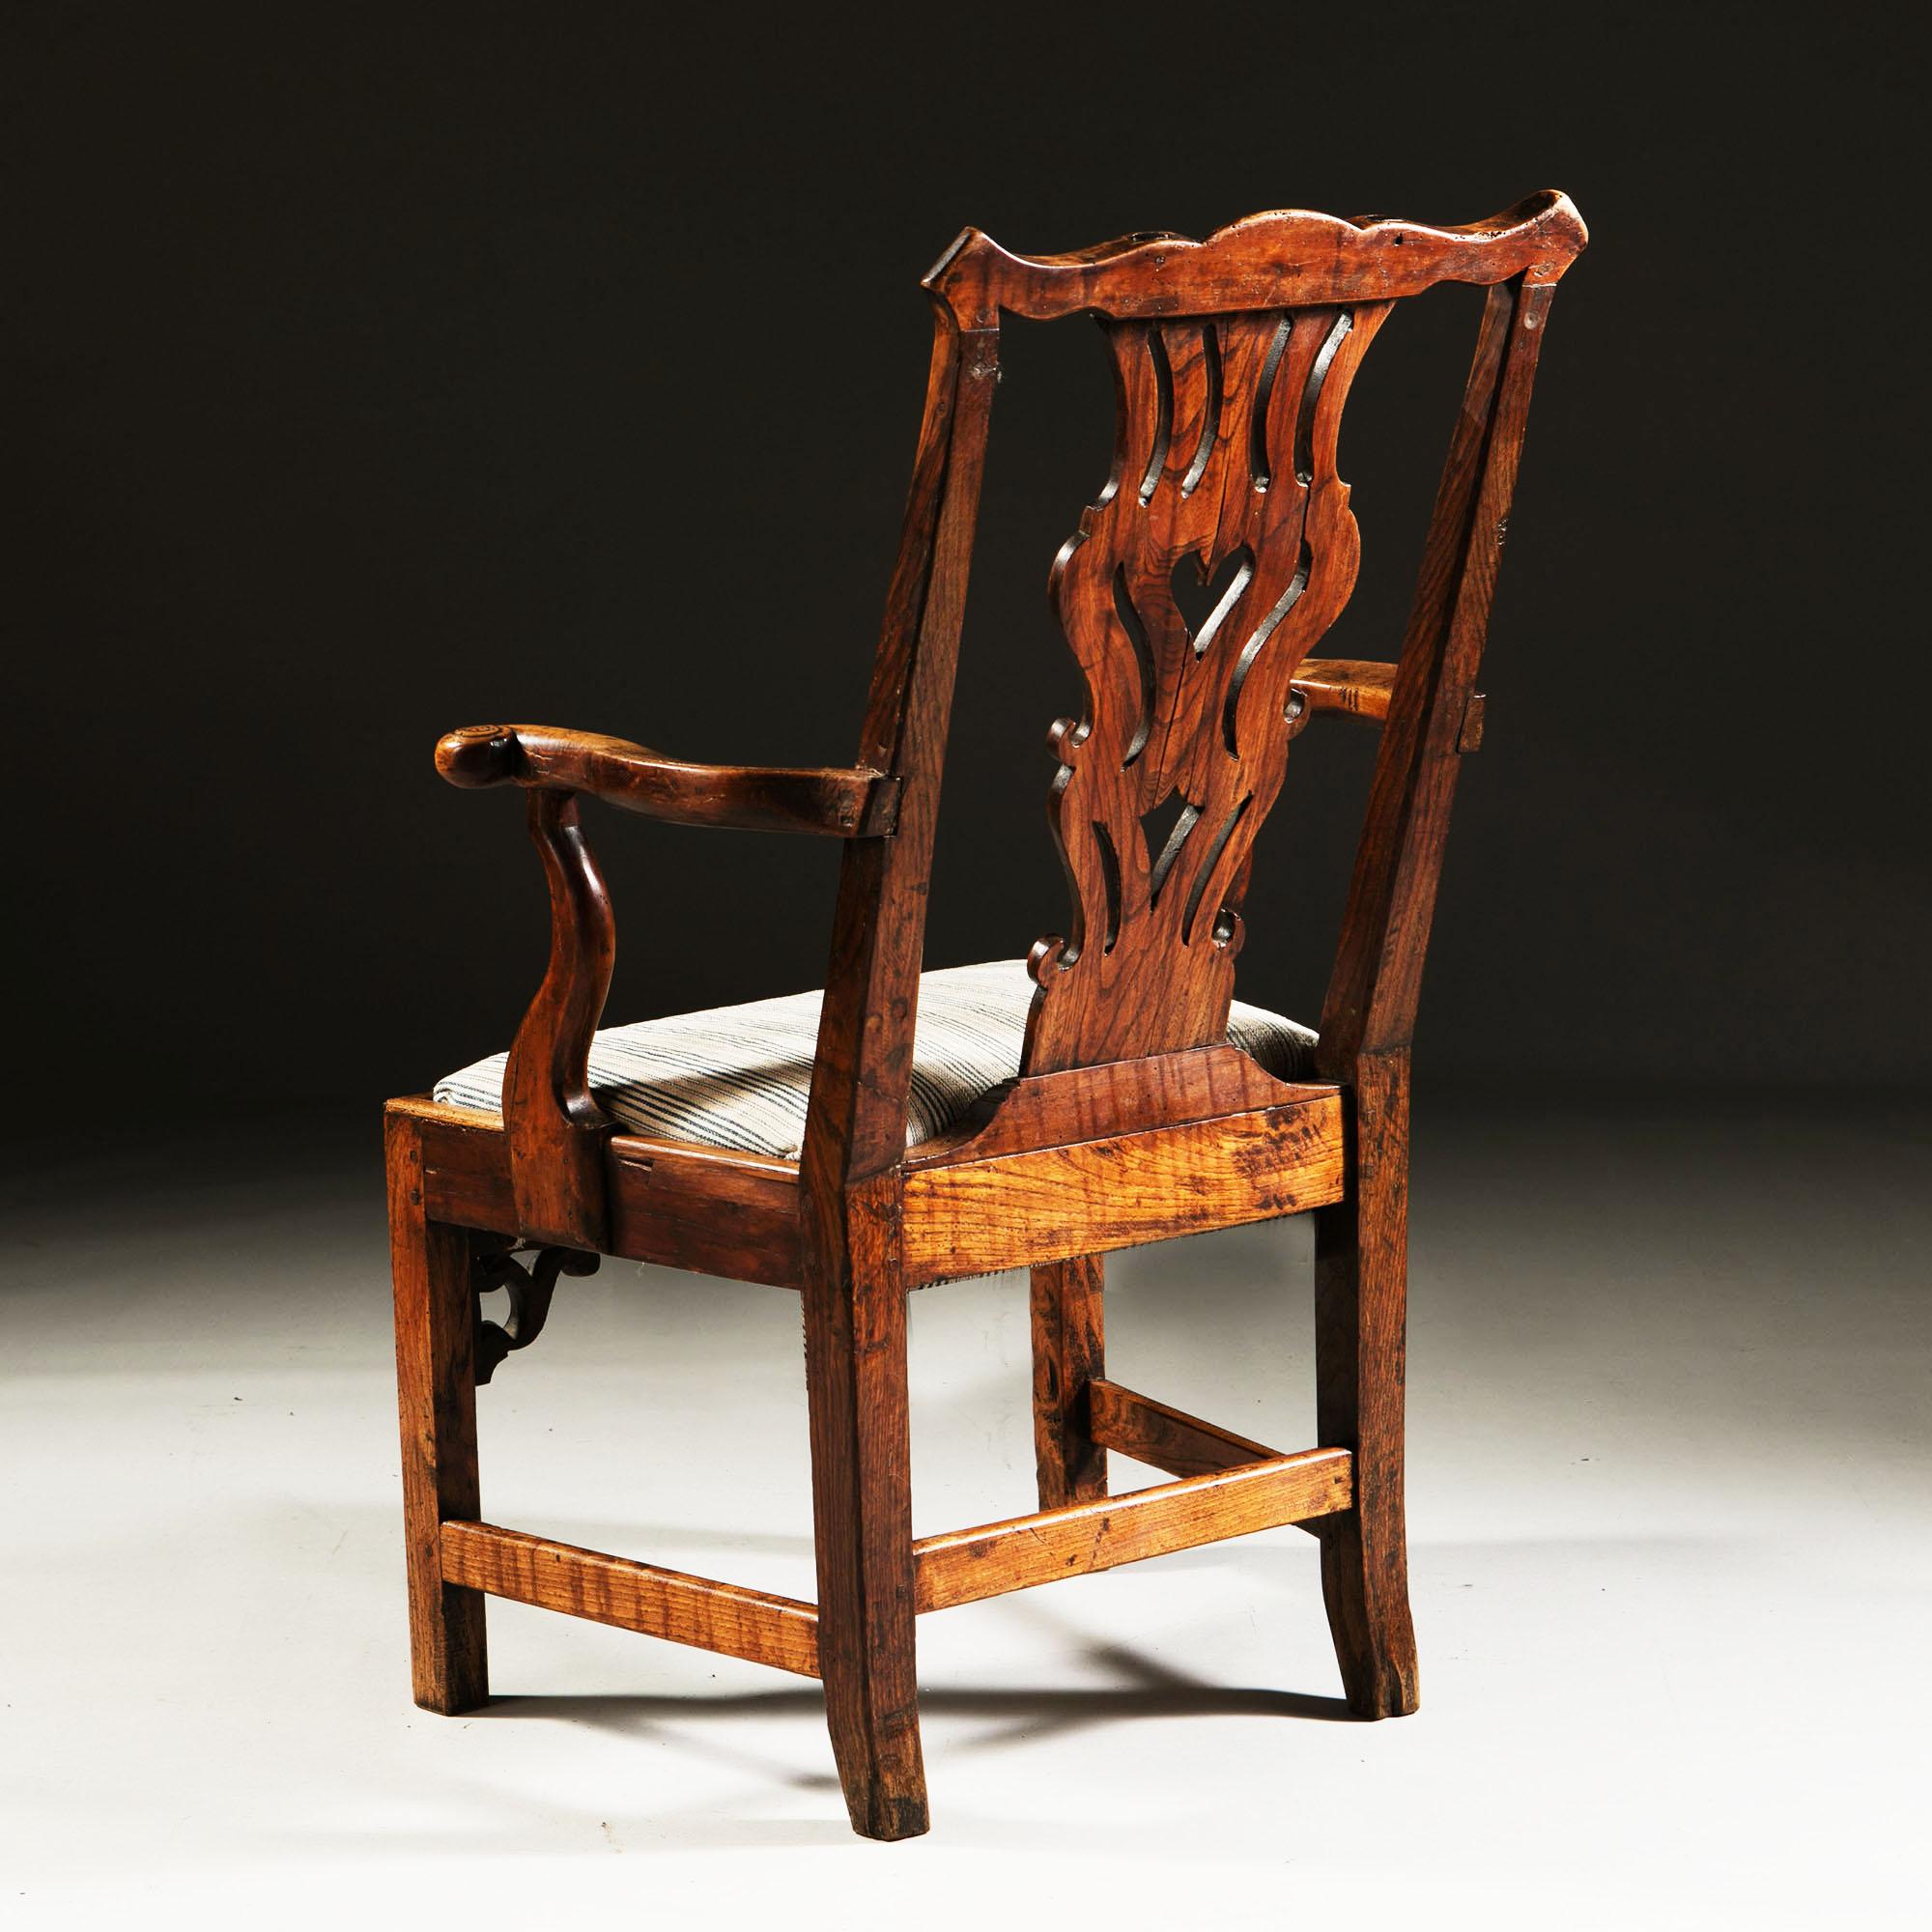 Ein feiner englischer Windsor-Stuhl aus Eibenholz aus dem frühen 18. Jahrhundert mit ausgebreiteten Armlehnen, Chippendale-Rückenlehne und einer geschnitzten und geformten Schürze, mit fein gemasertem Holz im gesamten Bereich, der Klappsitz ist mit